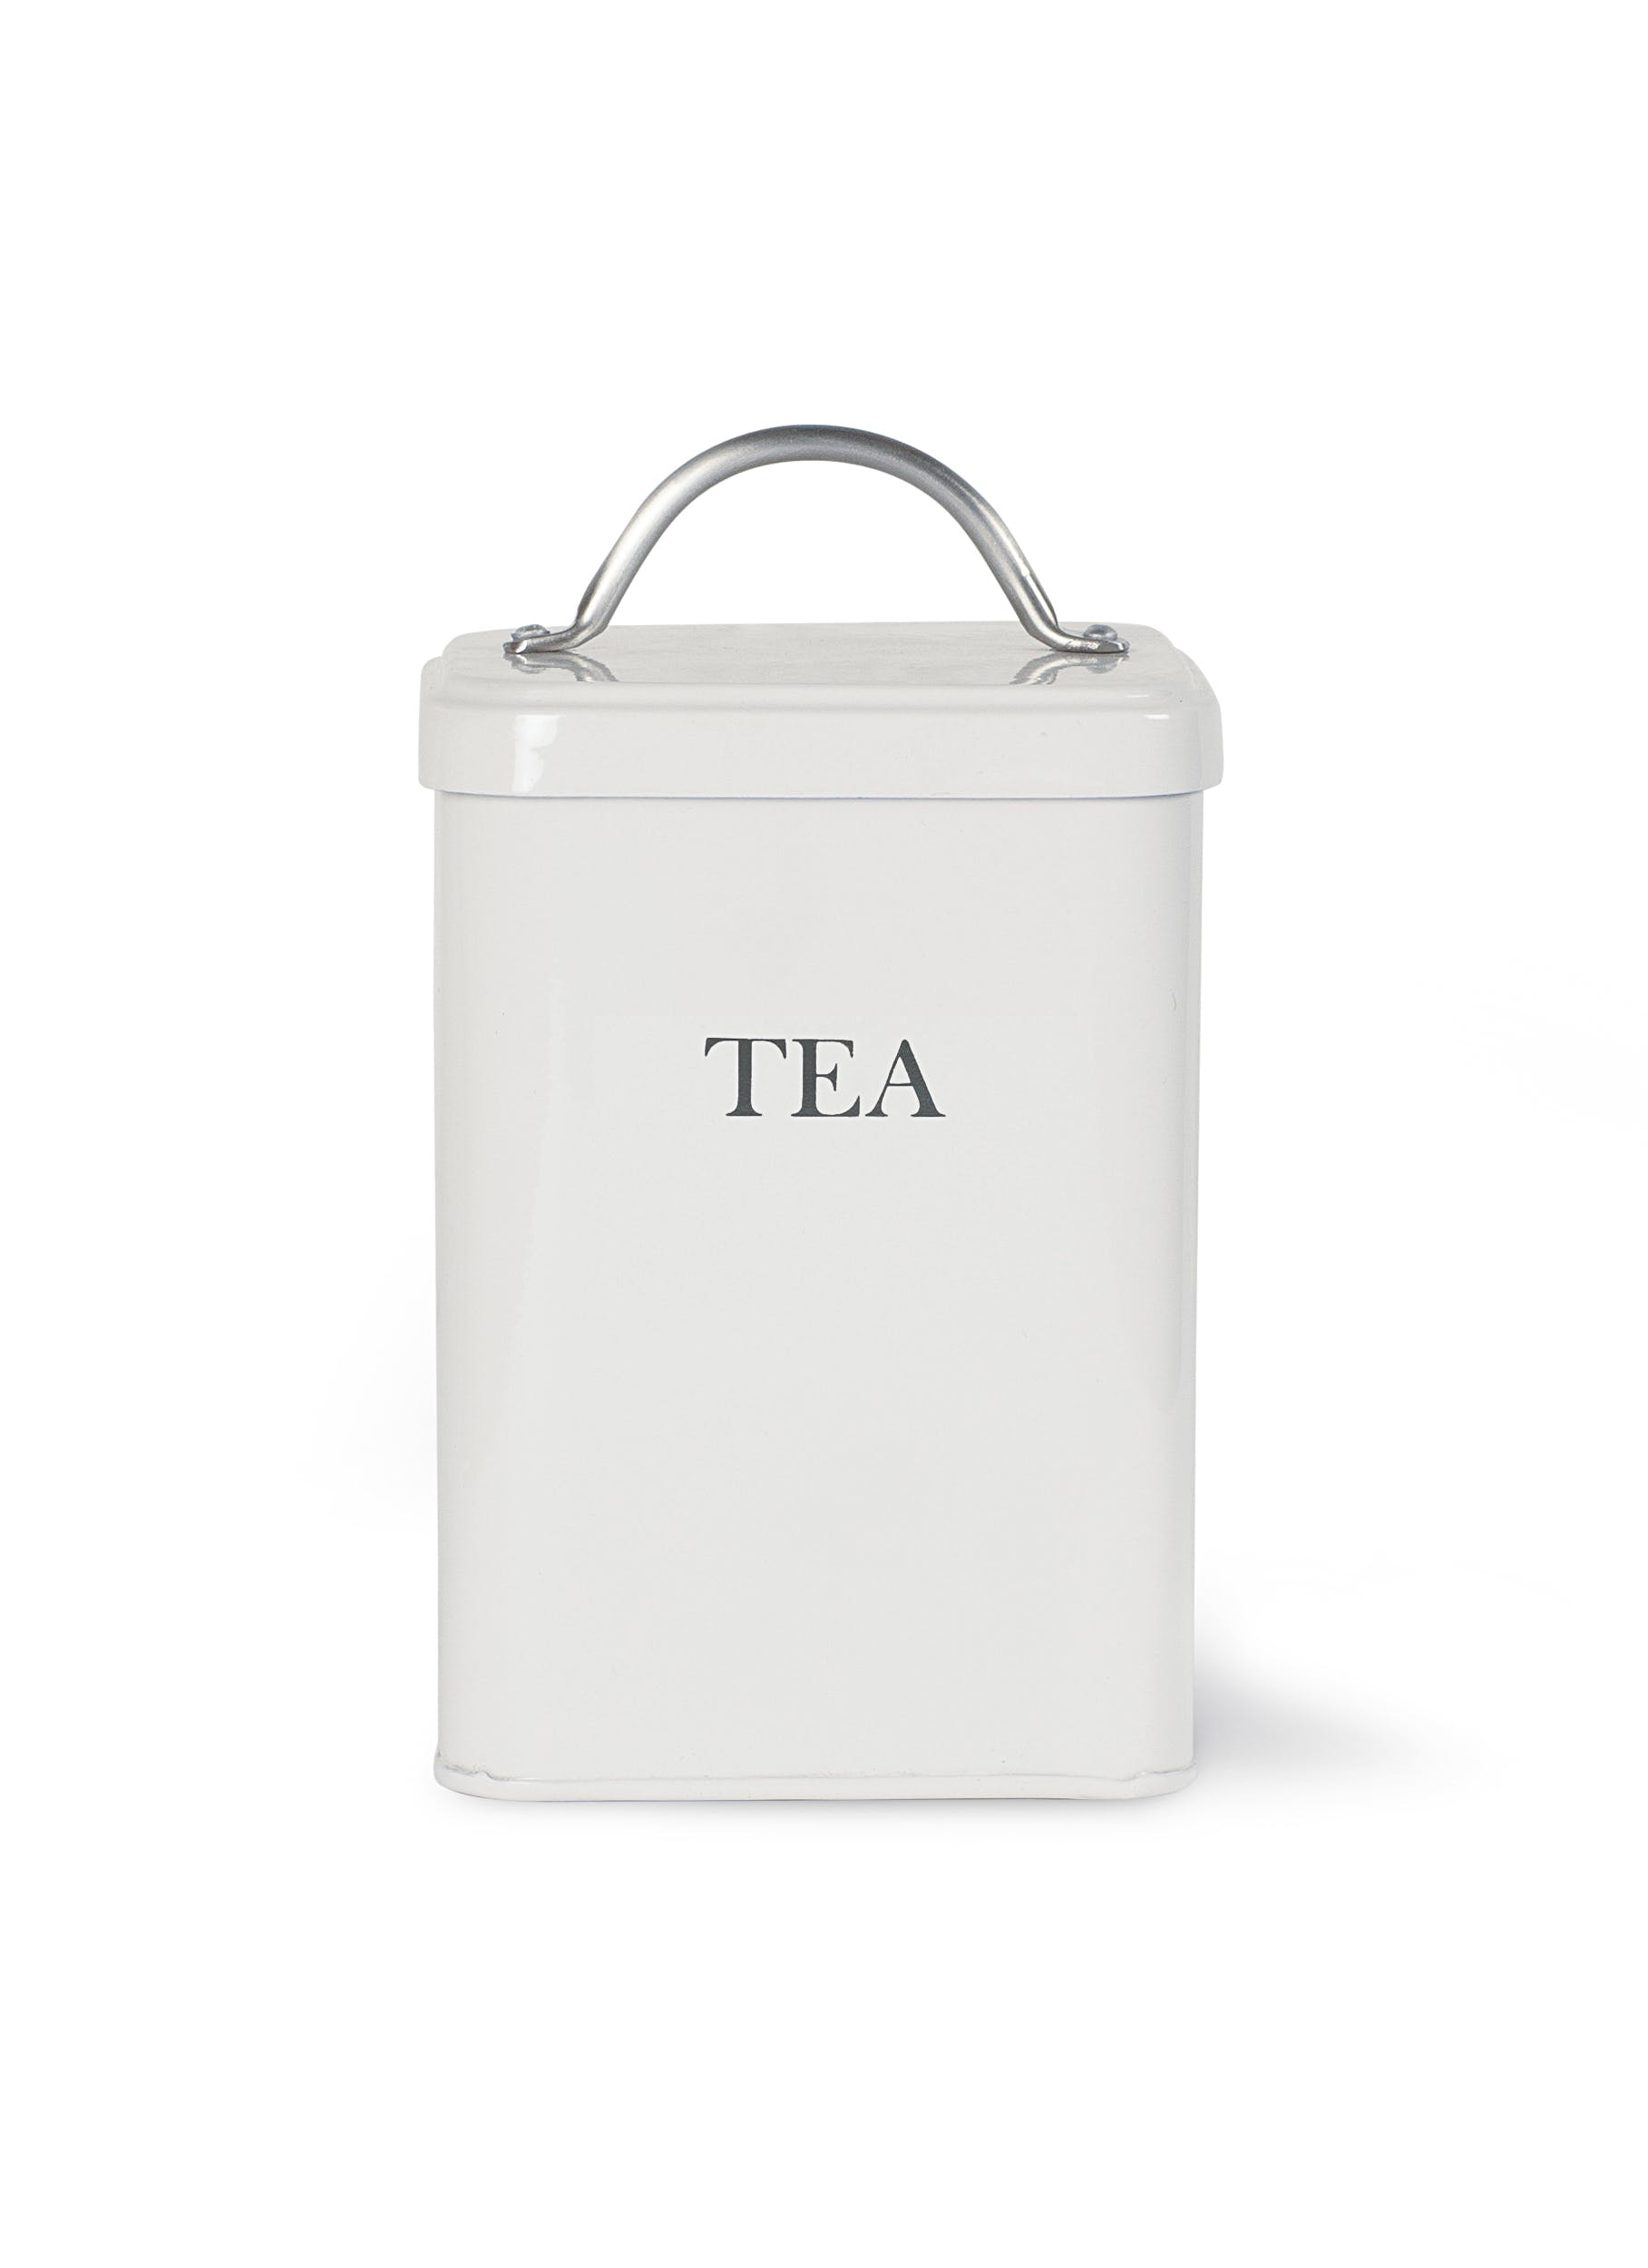 Garden Trading Off-White Tea Canister